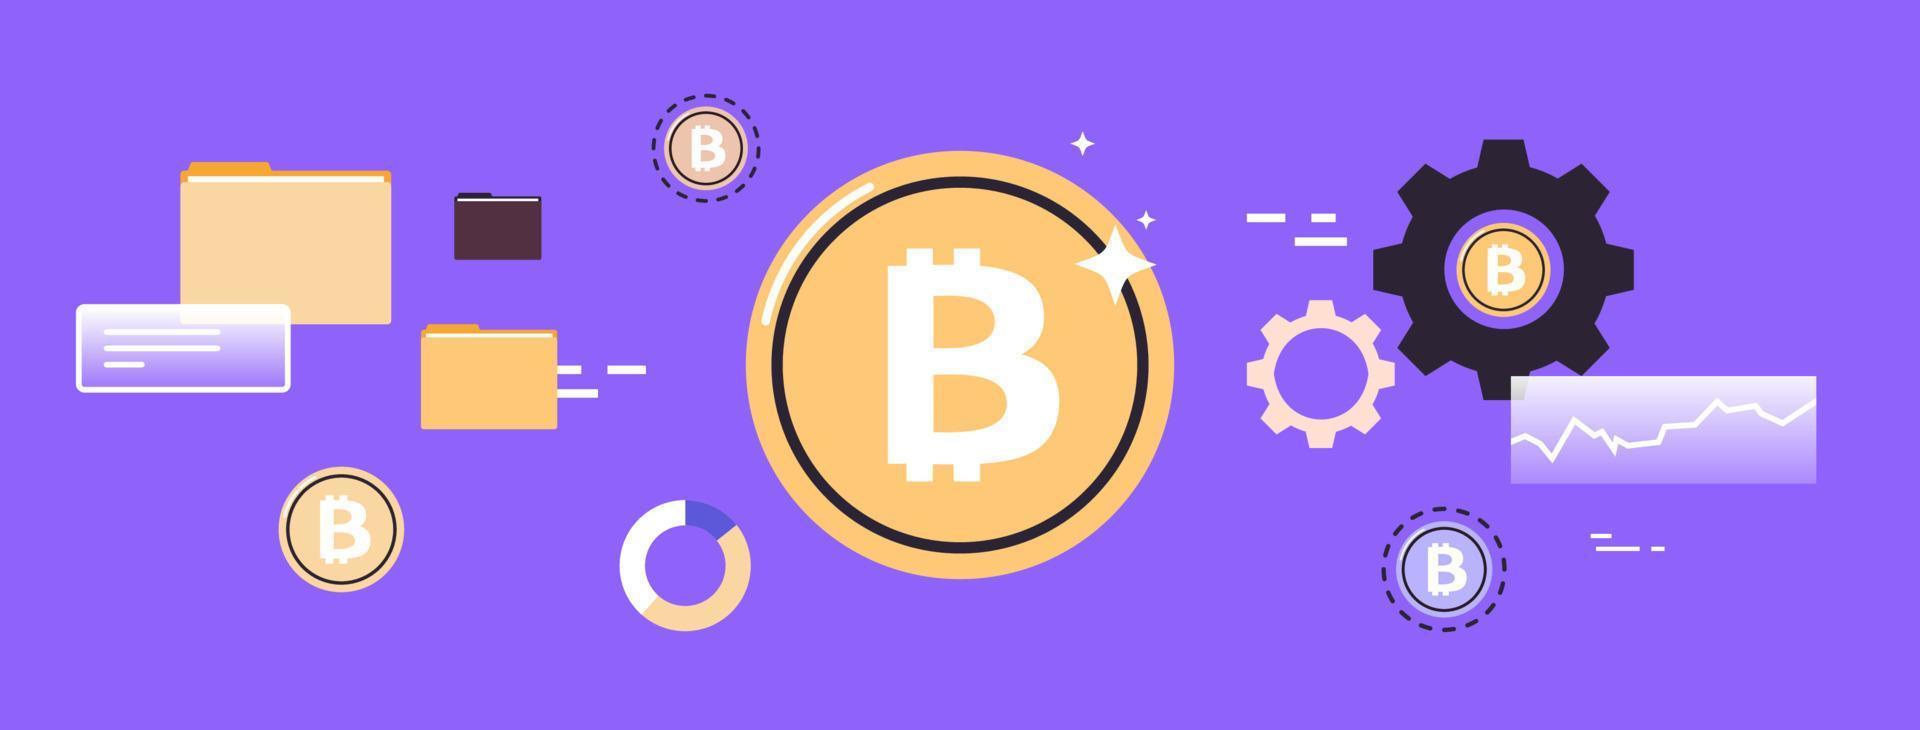 trasferimento di denaro online e acquisto o vendita di bitcoin, illustrazione vettoriale piatta del progresso della blockchain di criptovaluta di pagamento online.